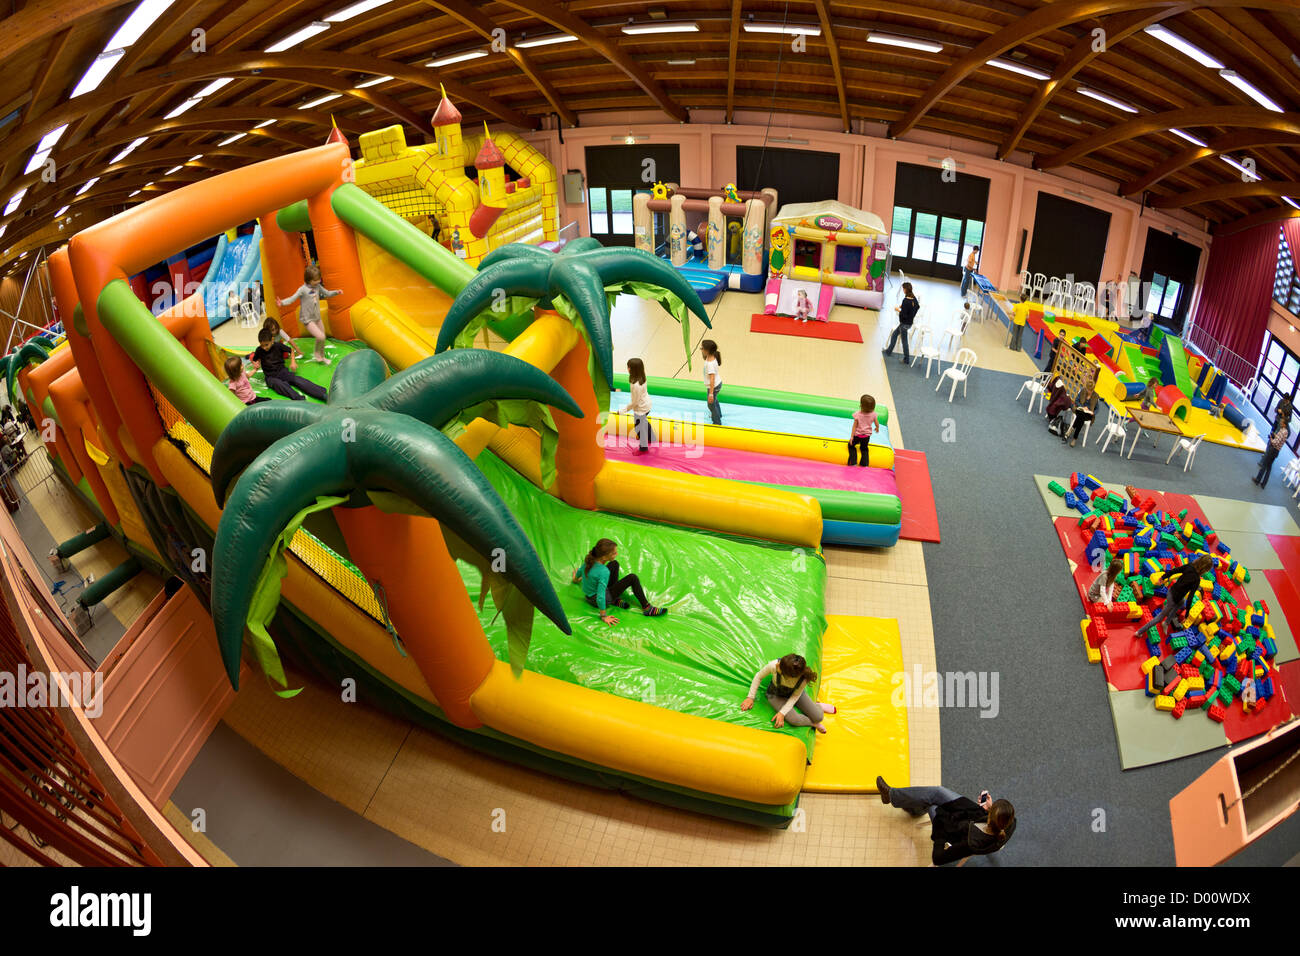 Strutture gonfiabili (castello gonfiabile tipo) per i bambini in un parco di divertimenti al coperto. Foto Stock